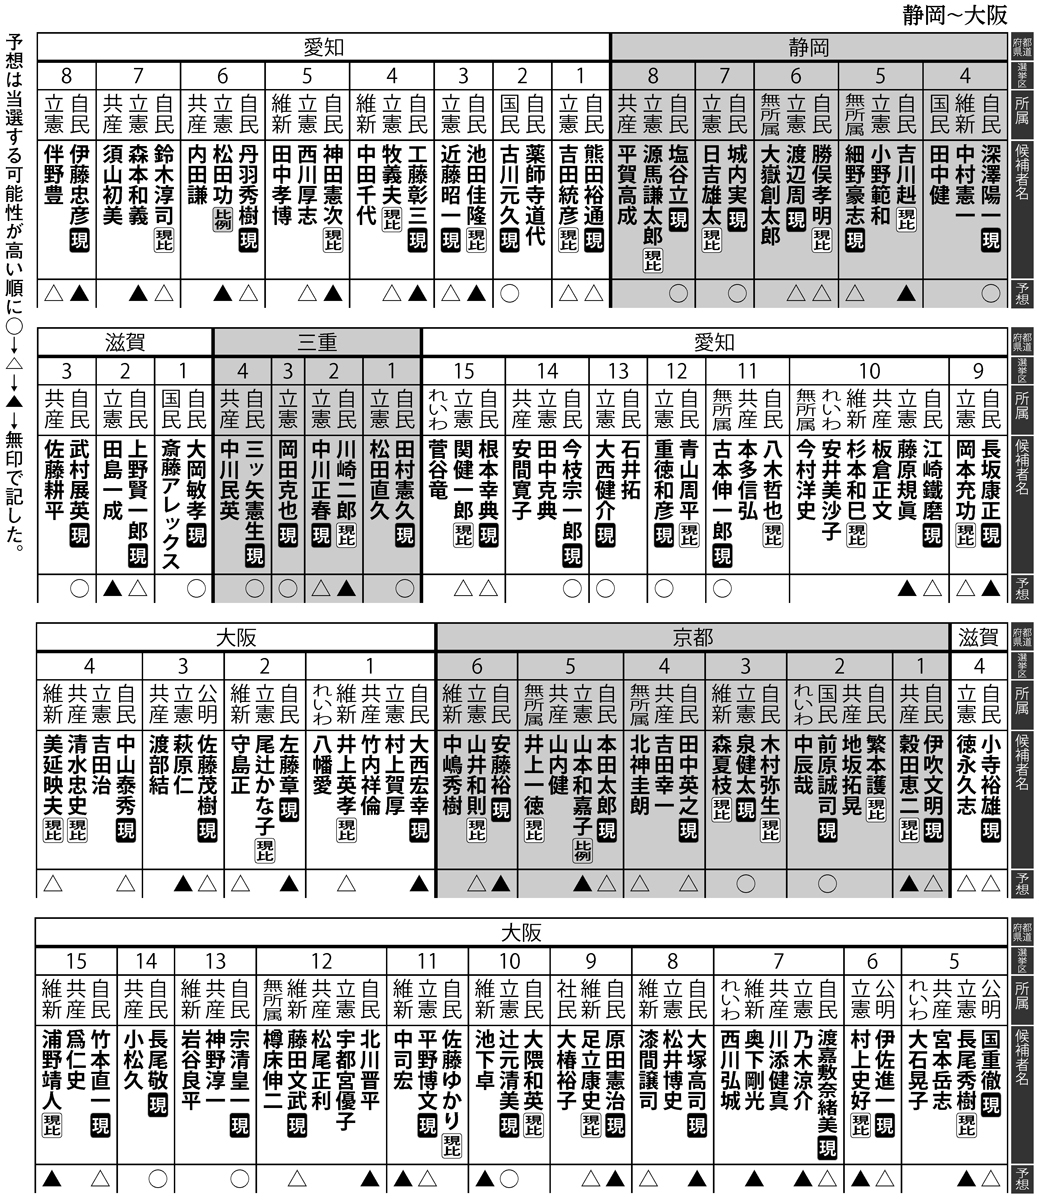 2021年総選挙、静岡4区～大阪15区の当選予想